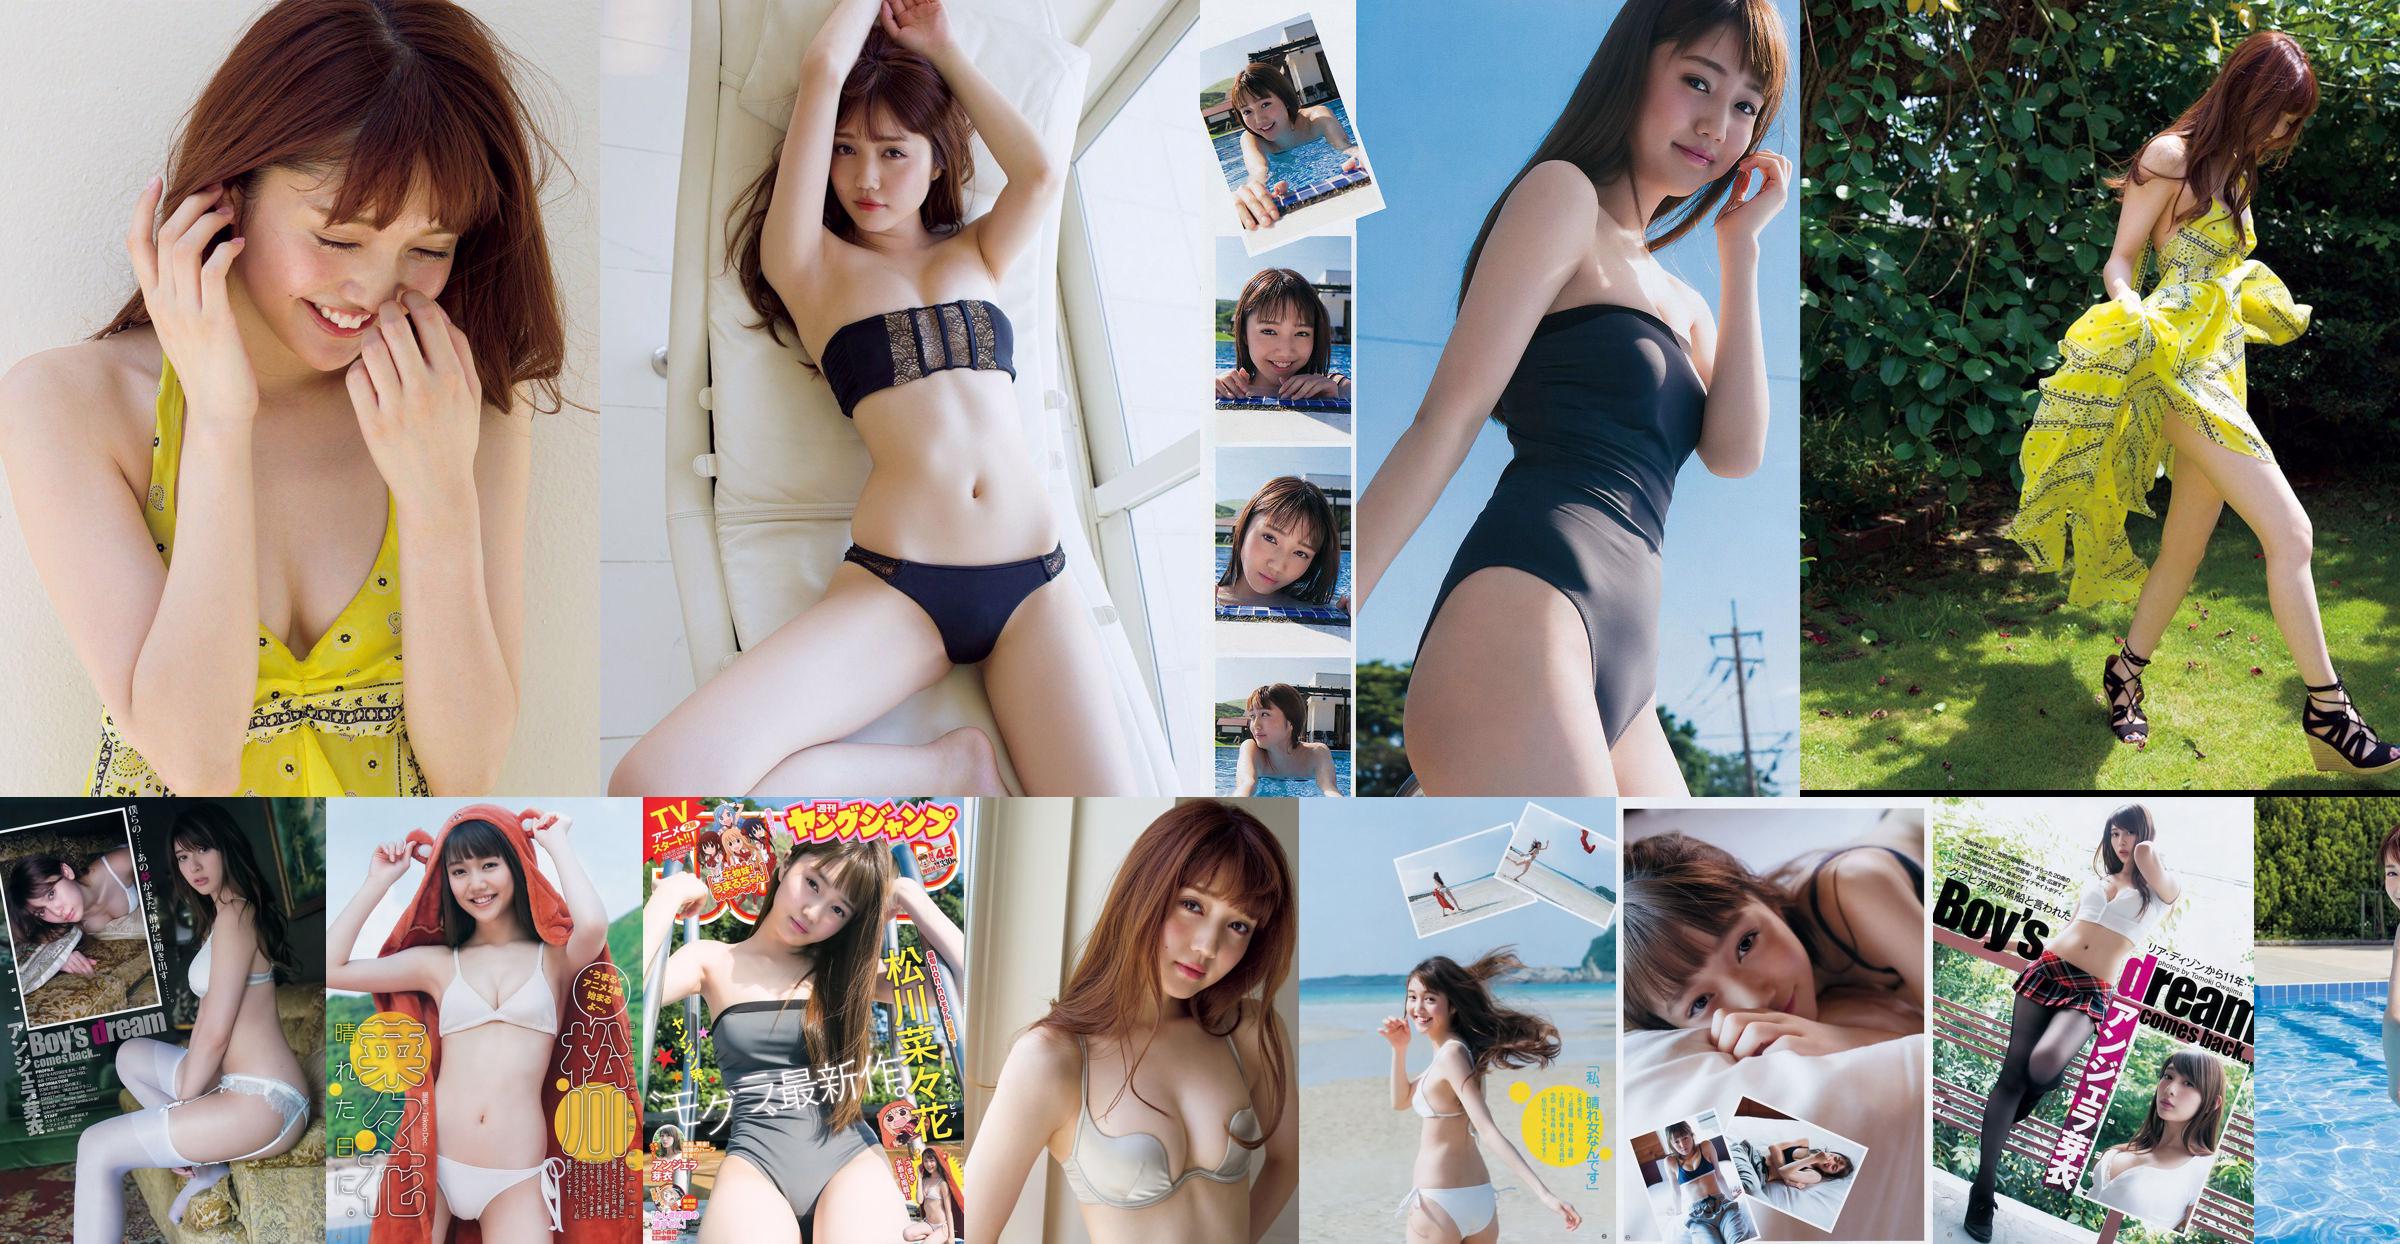 [วันศุกร์] Nanaka Matsukawa << นางแบบและชุดว่ายน้ำยอดนิยมออกเดทกับเสน่ห์ทางเพศอายุ 20 ปีที่ยอดเยี่ยม (พร้อมวิดีโอ) >> รูปภาพ No.3525f4 หน้า 4